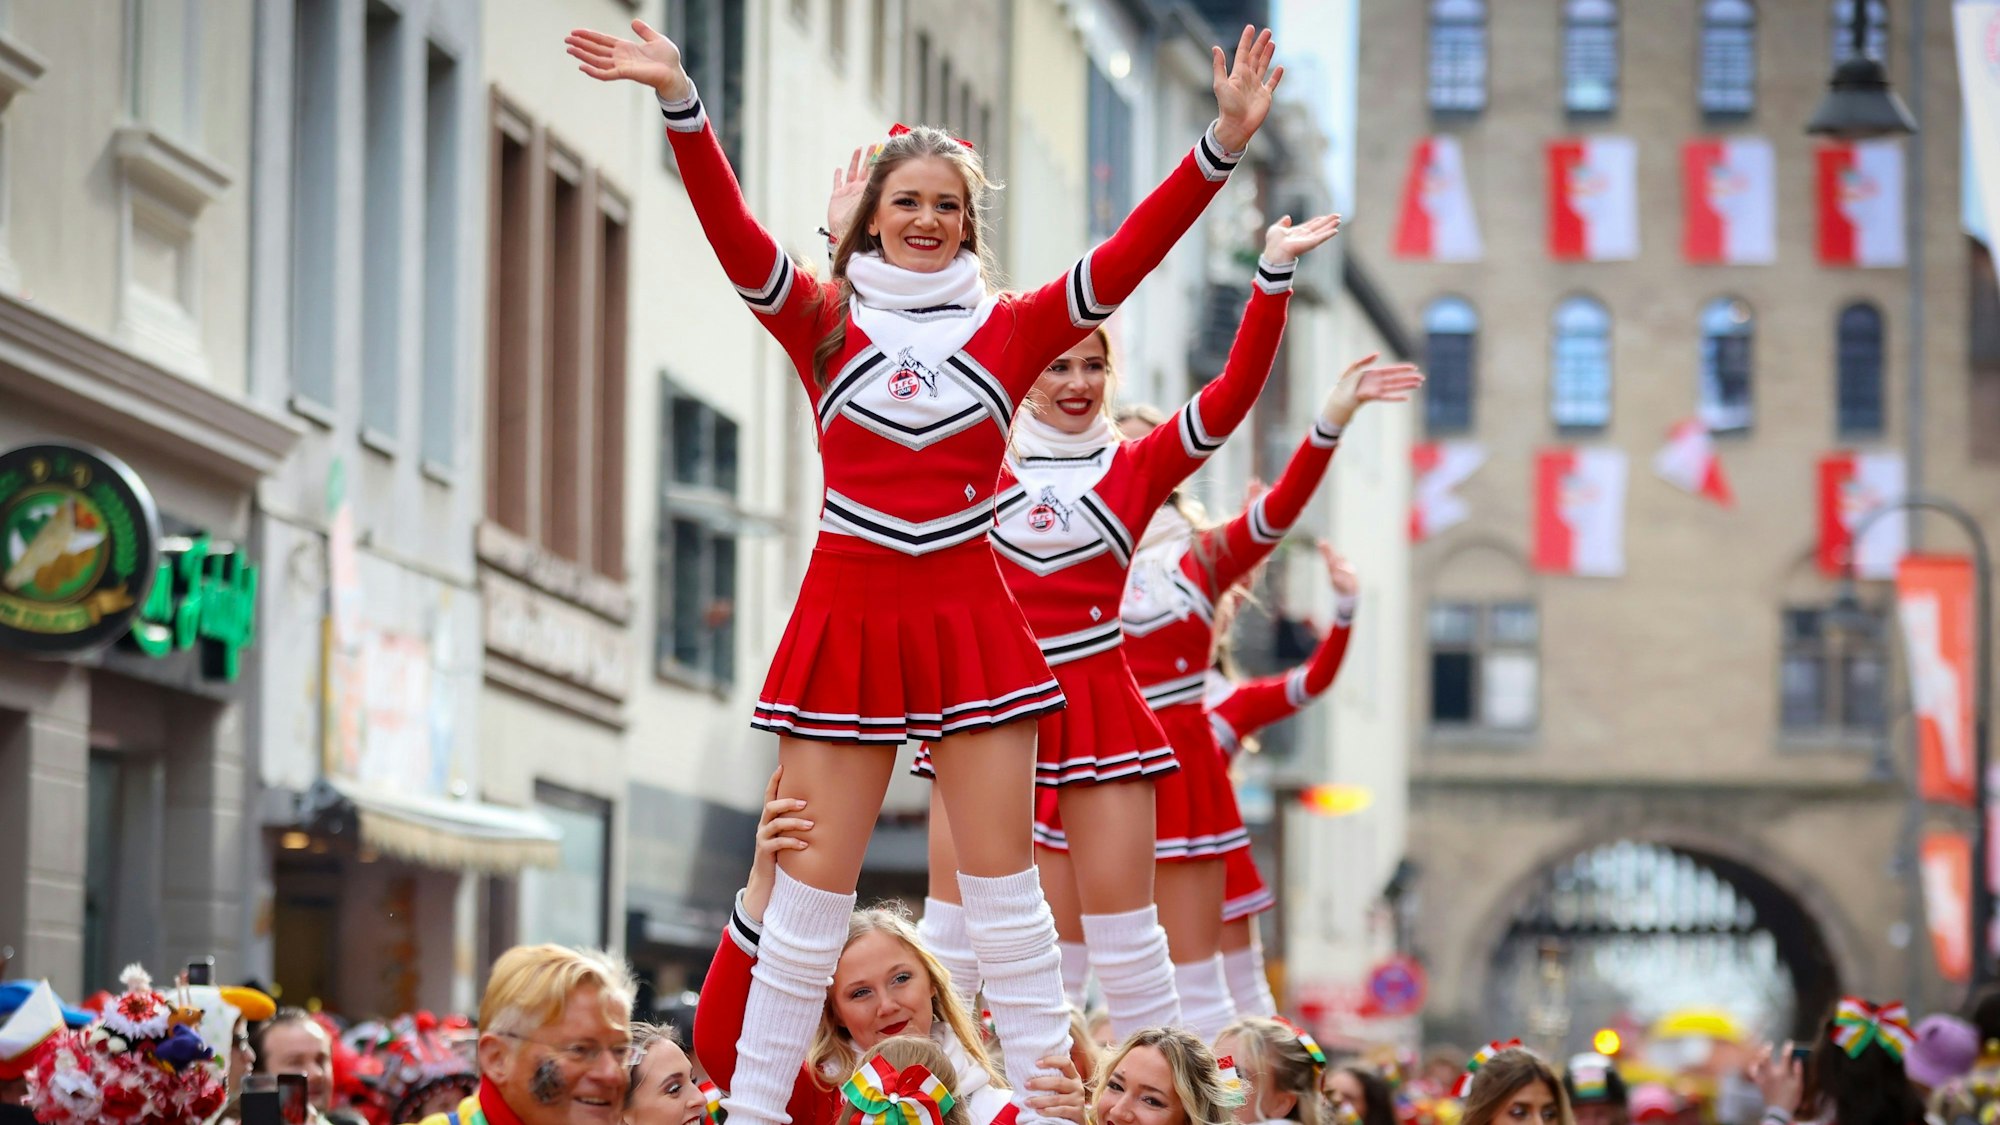 Auch die Cheerleader des 1. FC Köln sind beim Zug dabei. Hier werden einige Tänzerinnen auf Händen durch die Straße getragen.